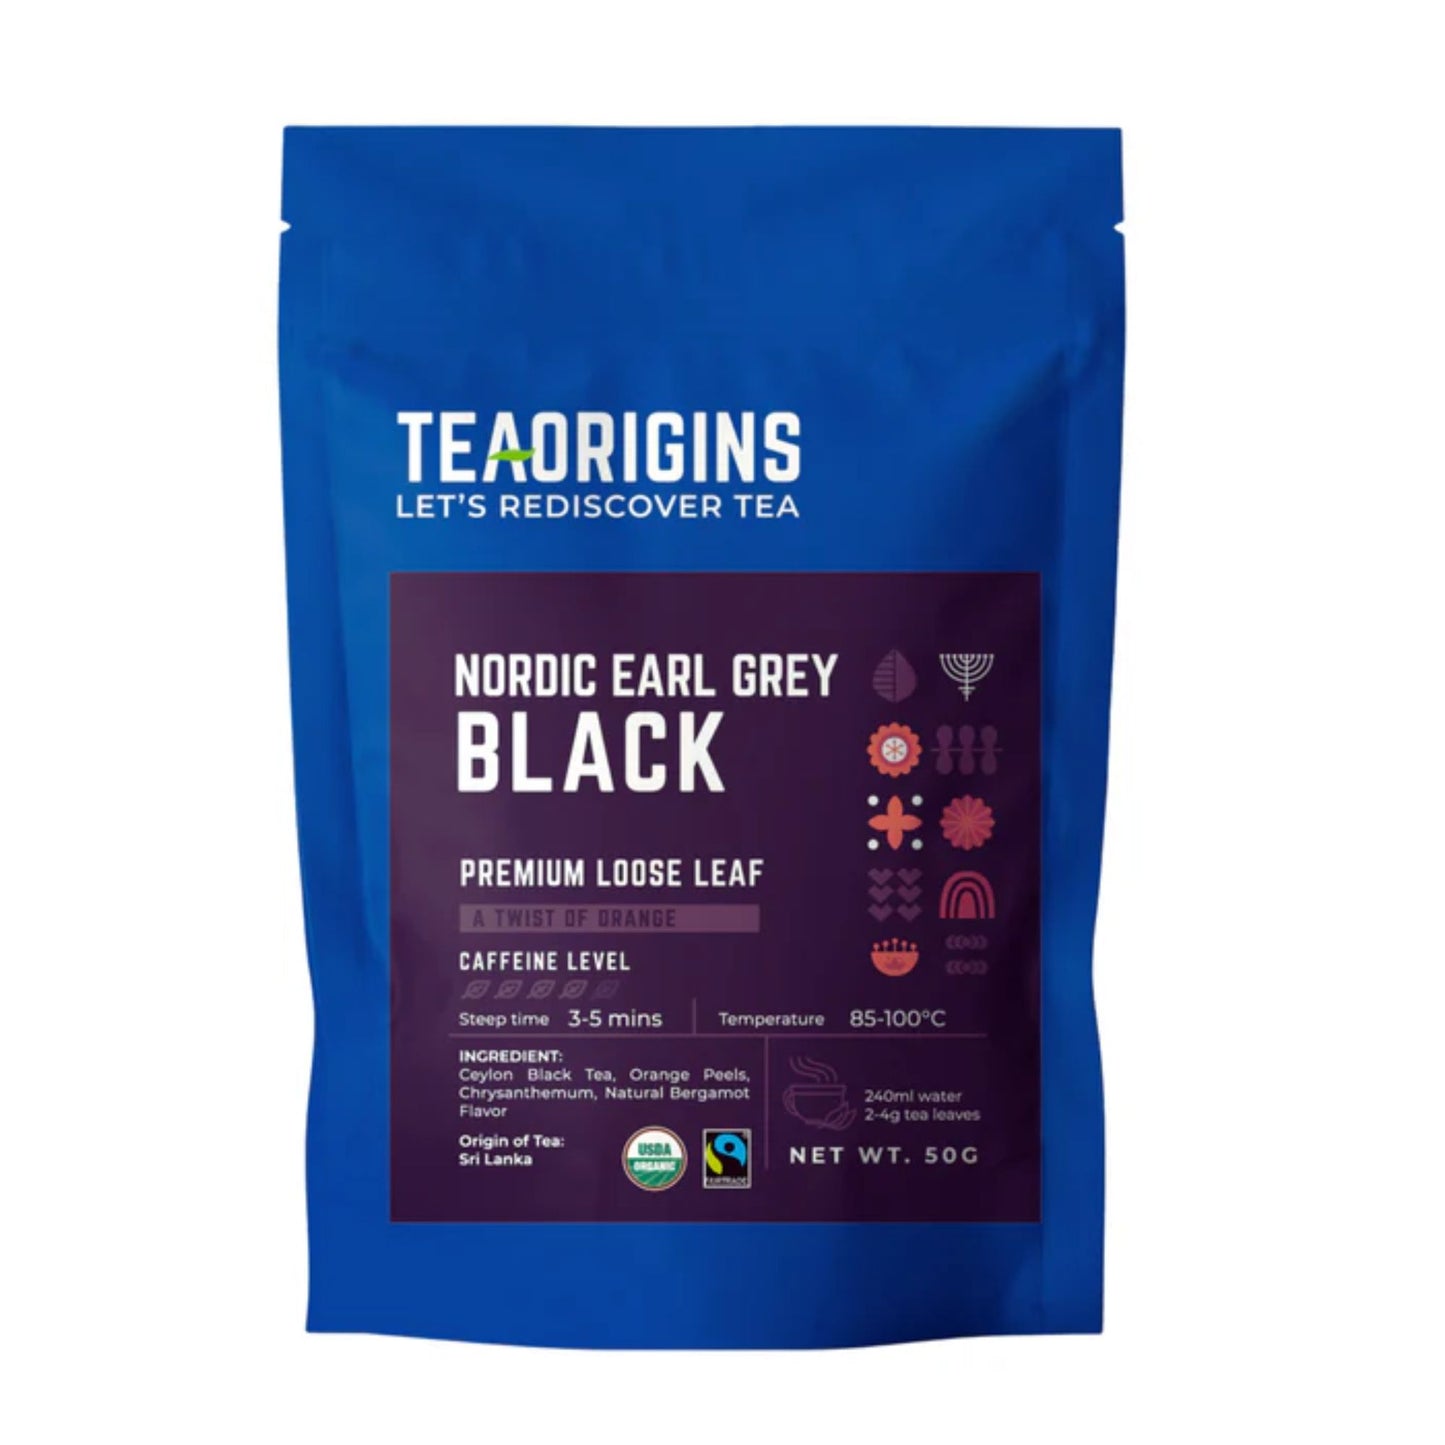 Teaorigins Nordic Earl Grey Black Premium Loose Leaf 50g